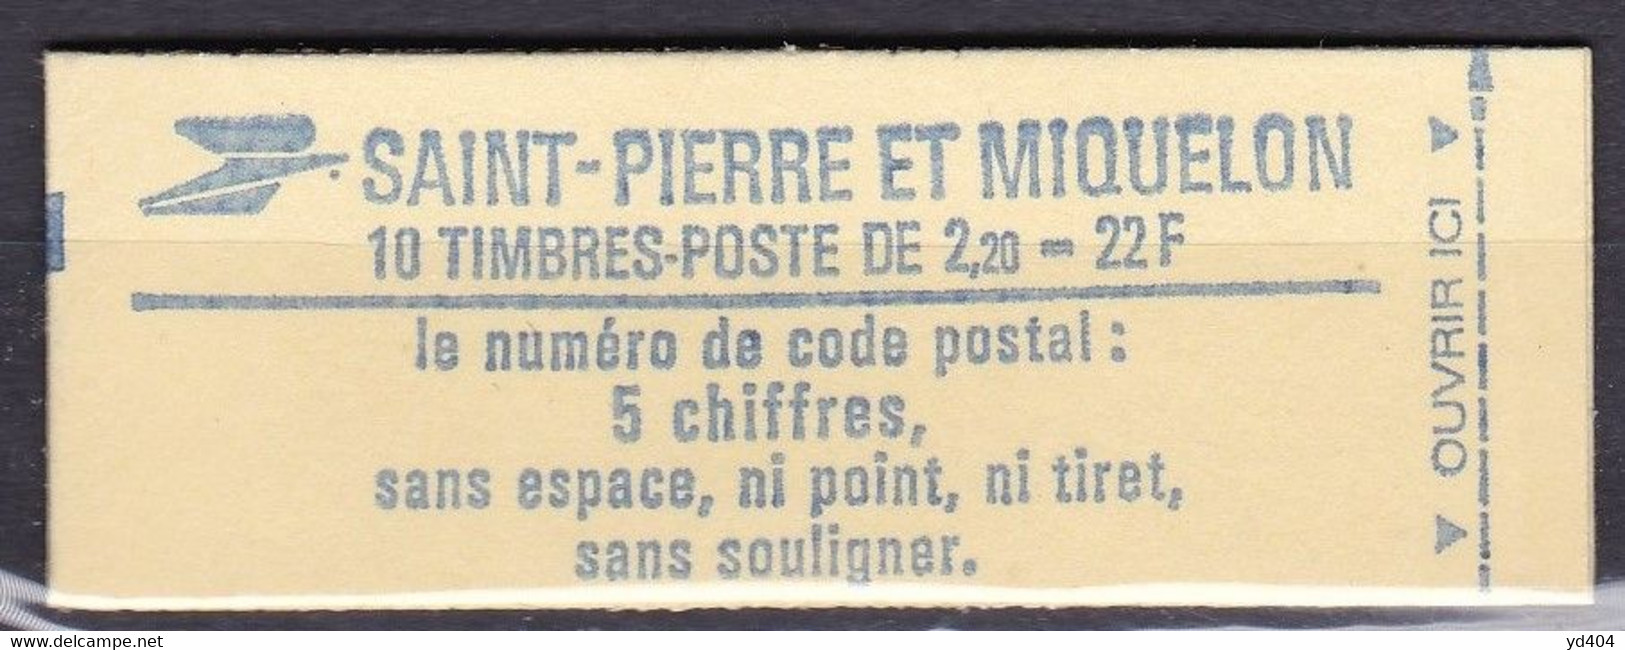 PM-710 – ST PIERRE & MIQUELON – BOOKLETS - 1986 – Liberté De Gandon – Y&T # C464a MNH 12,50 € - Carnets